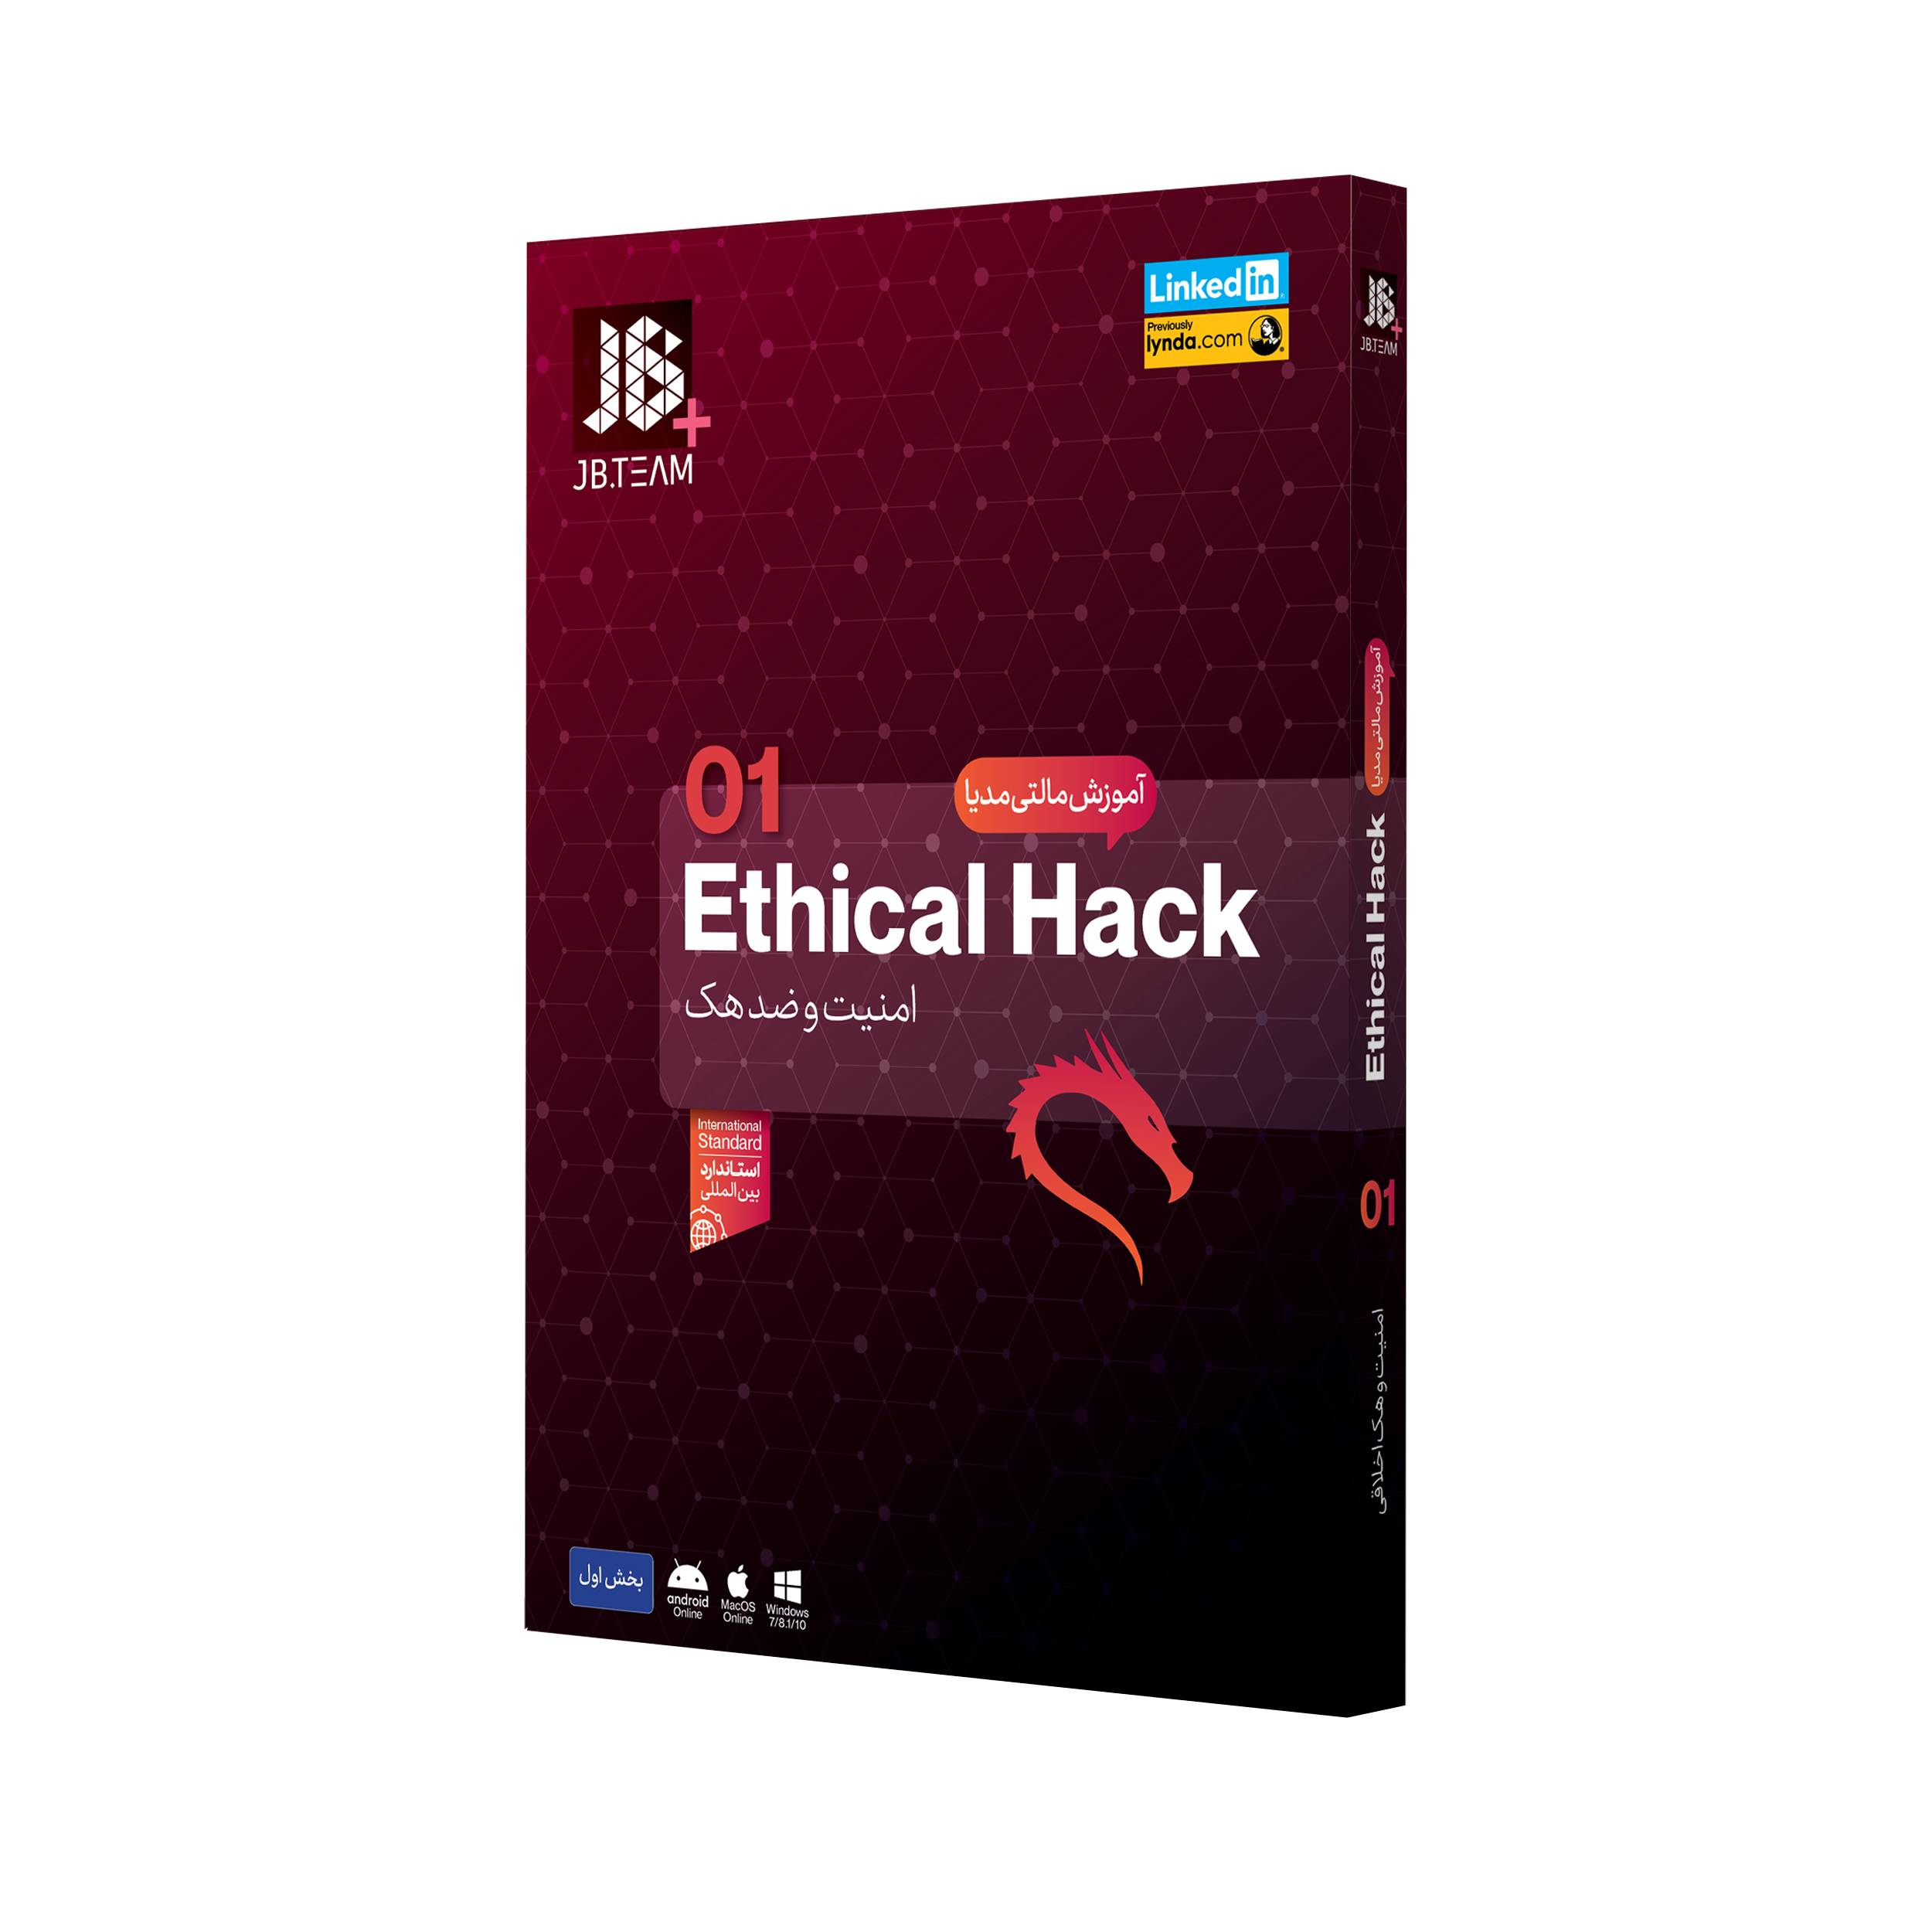  نرم افزار آموزشی مالتی مدیای Ethical Hack امنیت و جلوگیری از هک نشر جی بی تیم